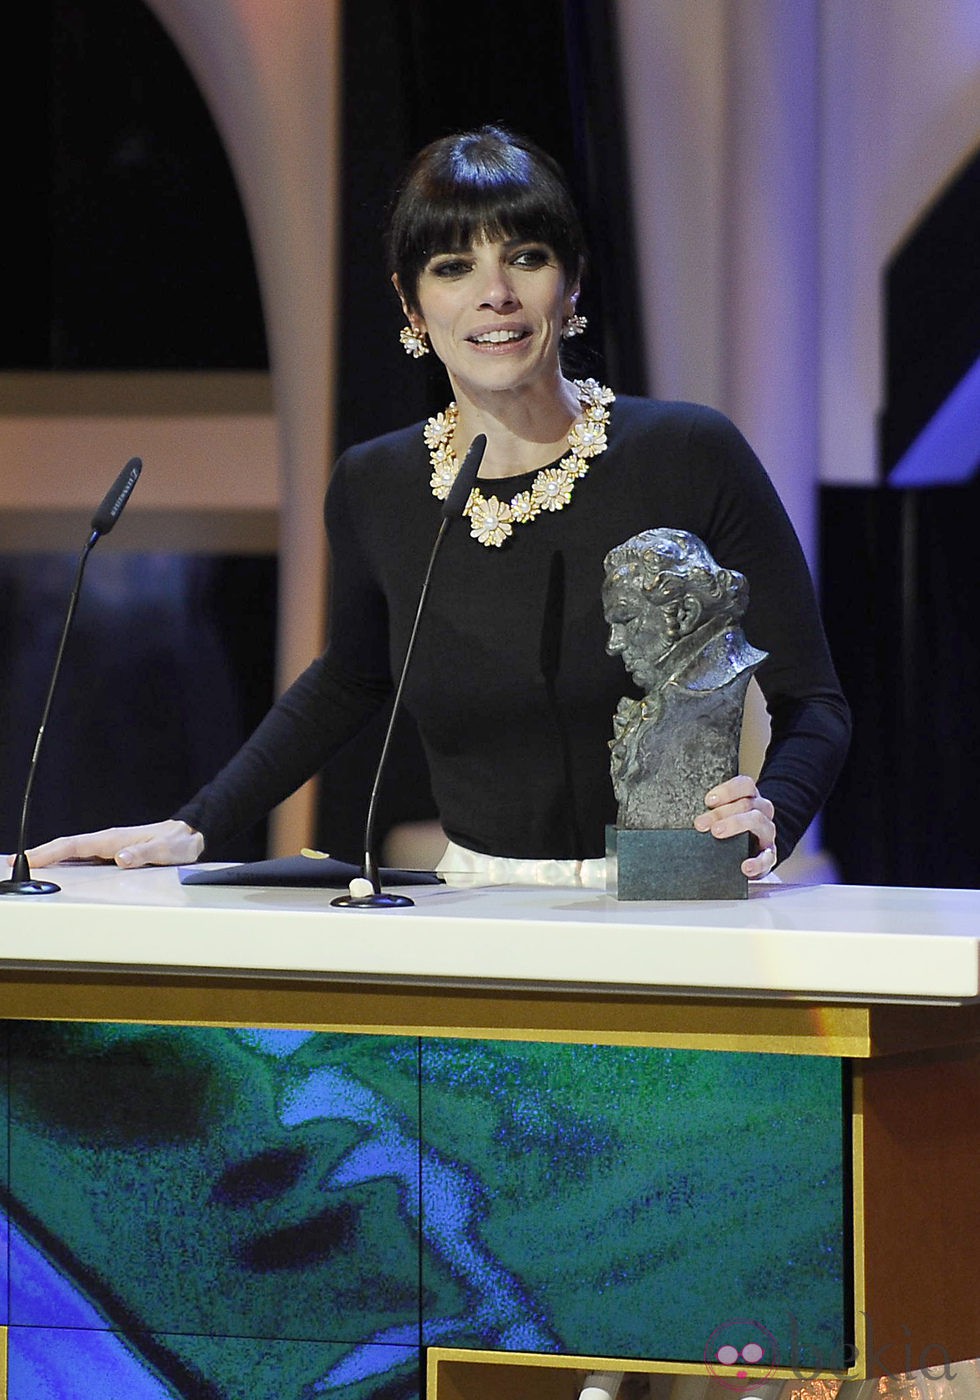 Maribel Verdú recoge el Goya 2013 a la Mejor Actriz Protagonista